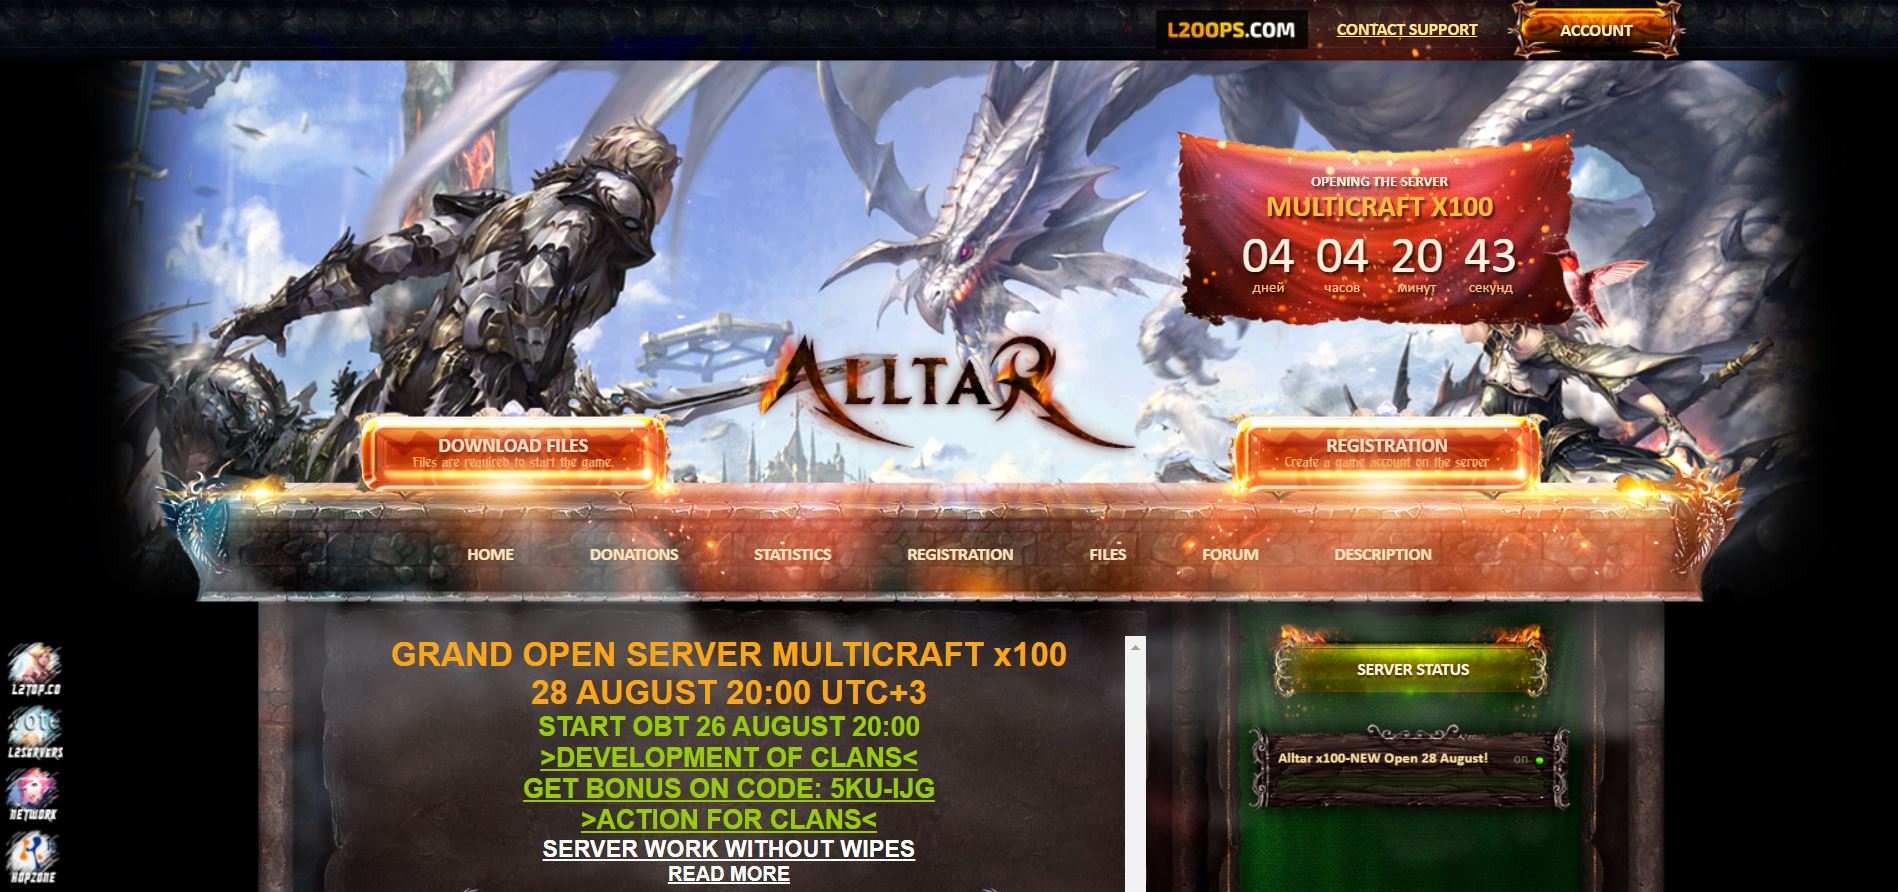 🎮 Lineage 2 Interlude x20 сервер на Alltar: Игровой опыт нового уровня! ⚔️🛡️